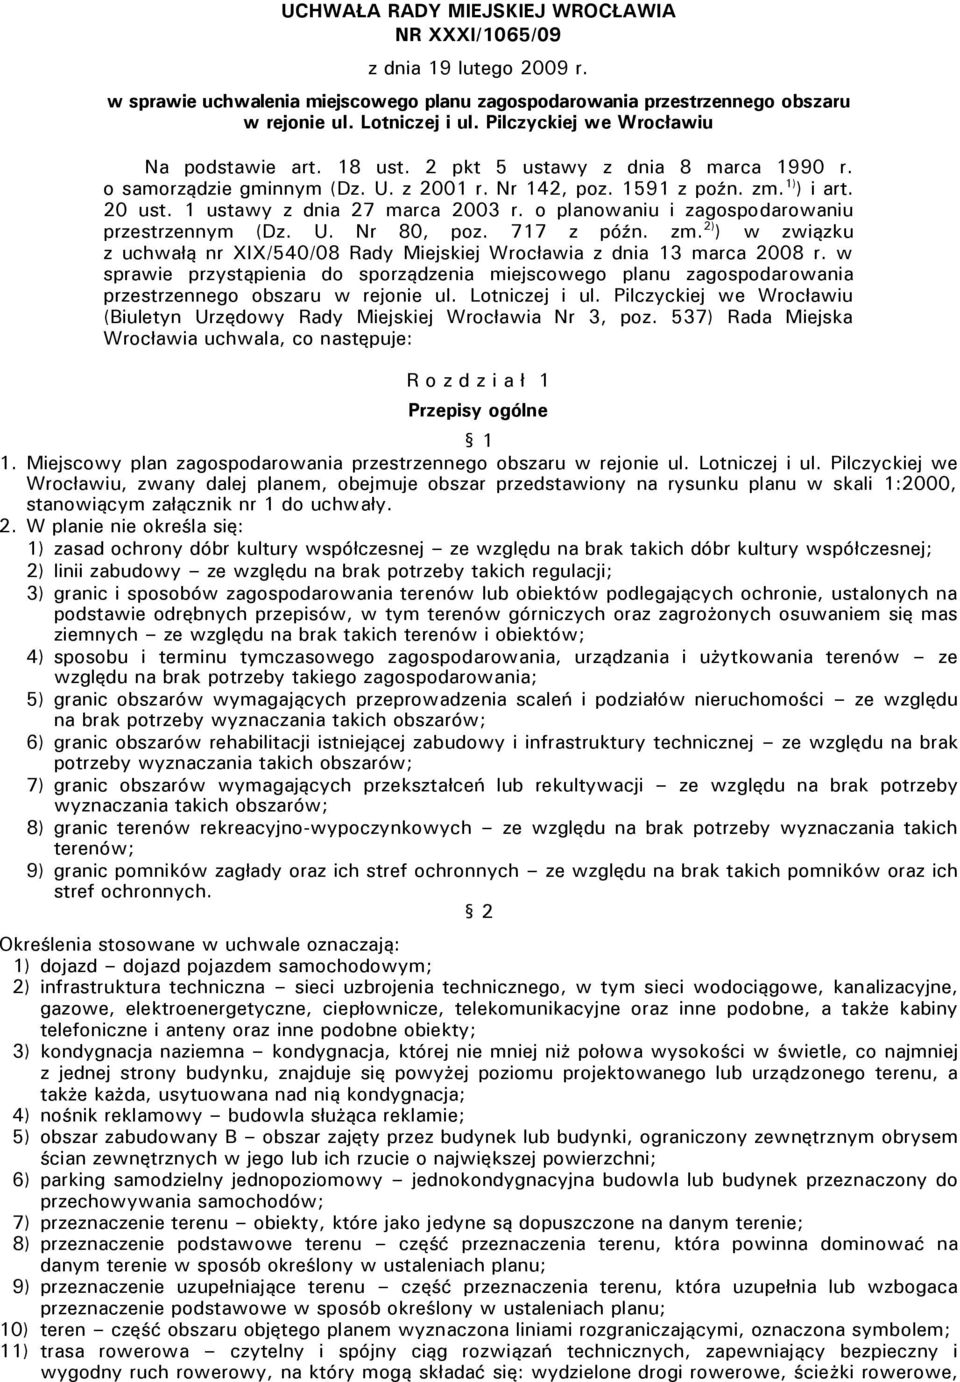 1 ustawy z dnia 27 marca 2003 r. o planowaniu i zagospodarowaniu przestrzennym (Dz. U. Nr 80, poz. 717 z późn. zm.